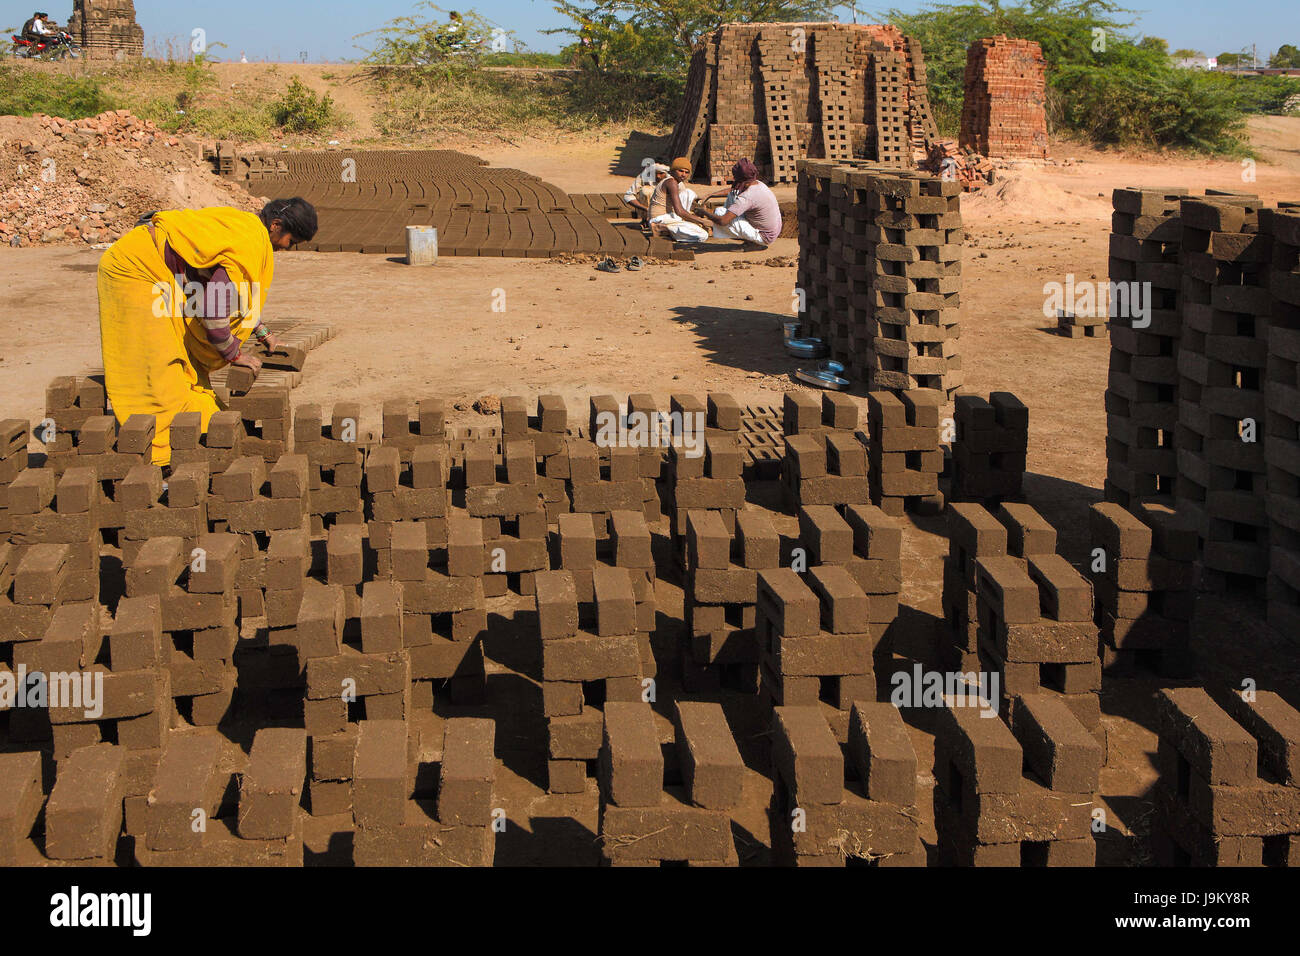 man making bricks, barwani, madhya pradesh, India, Asia Stock Photo